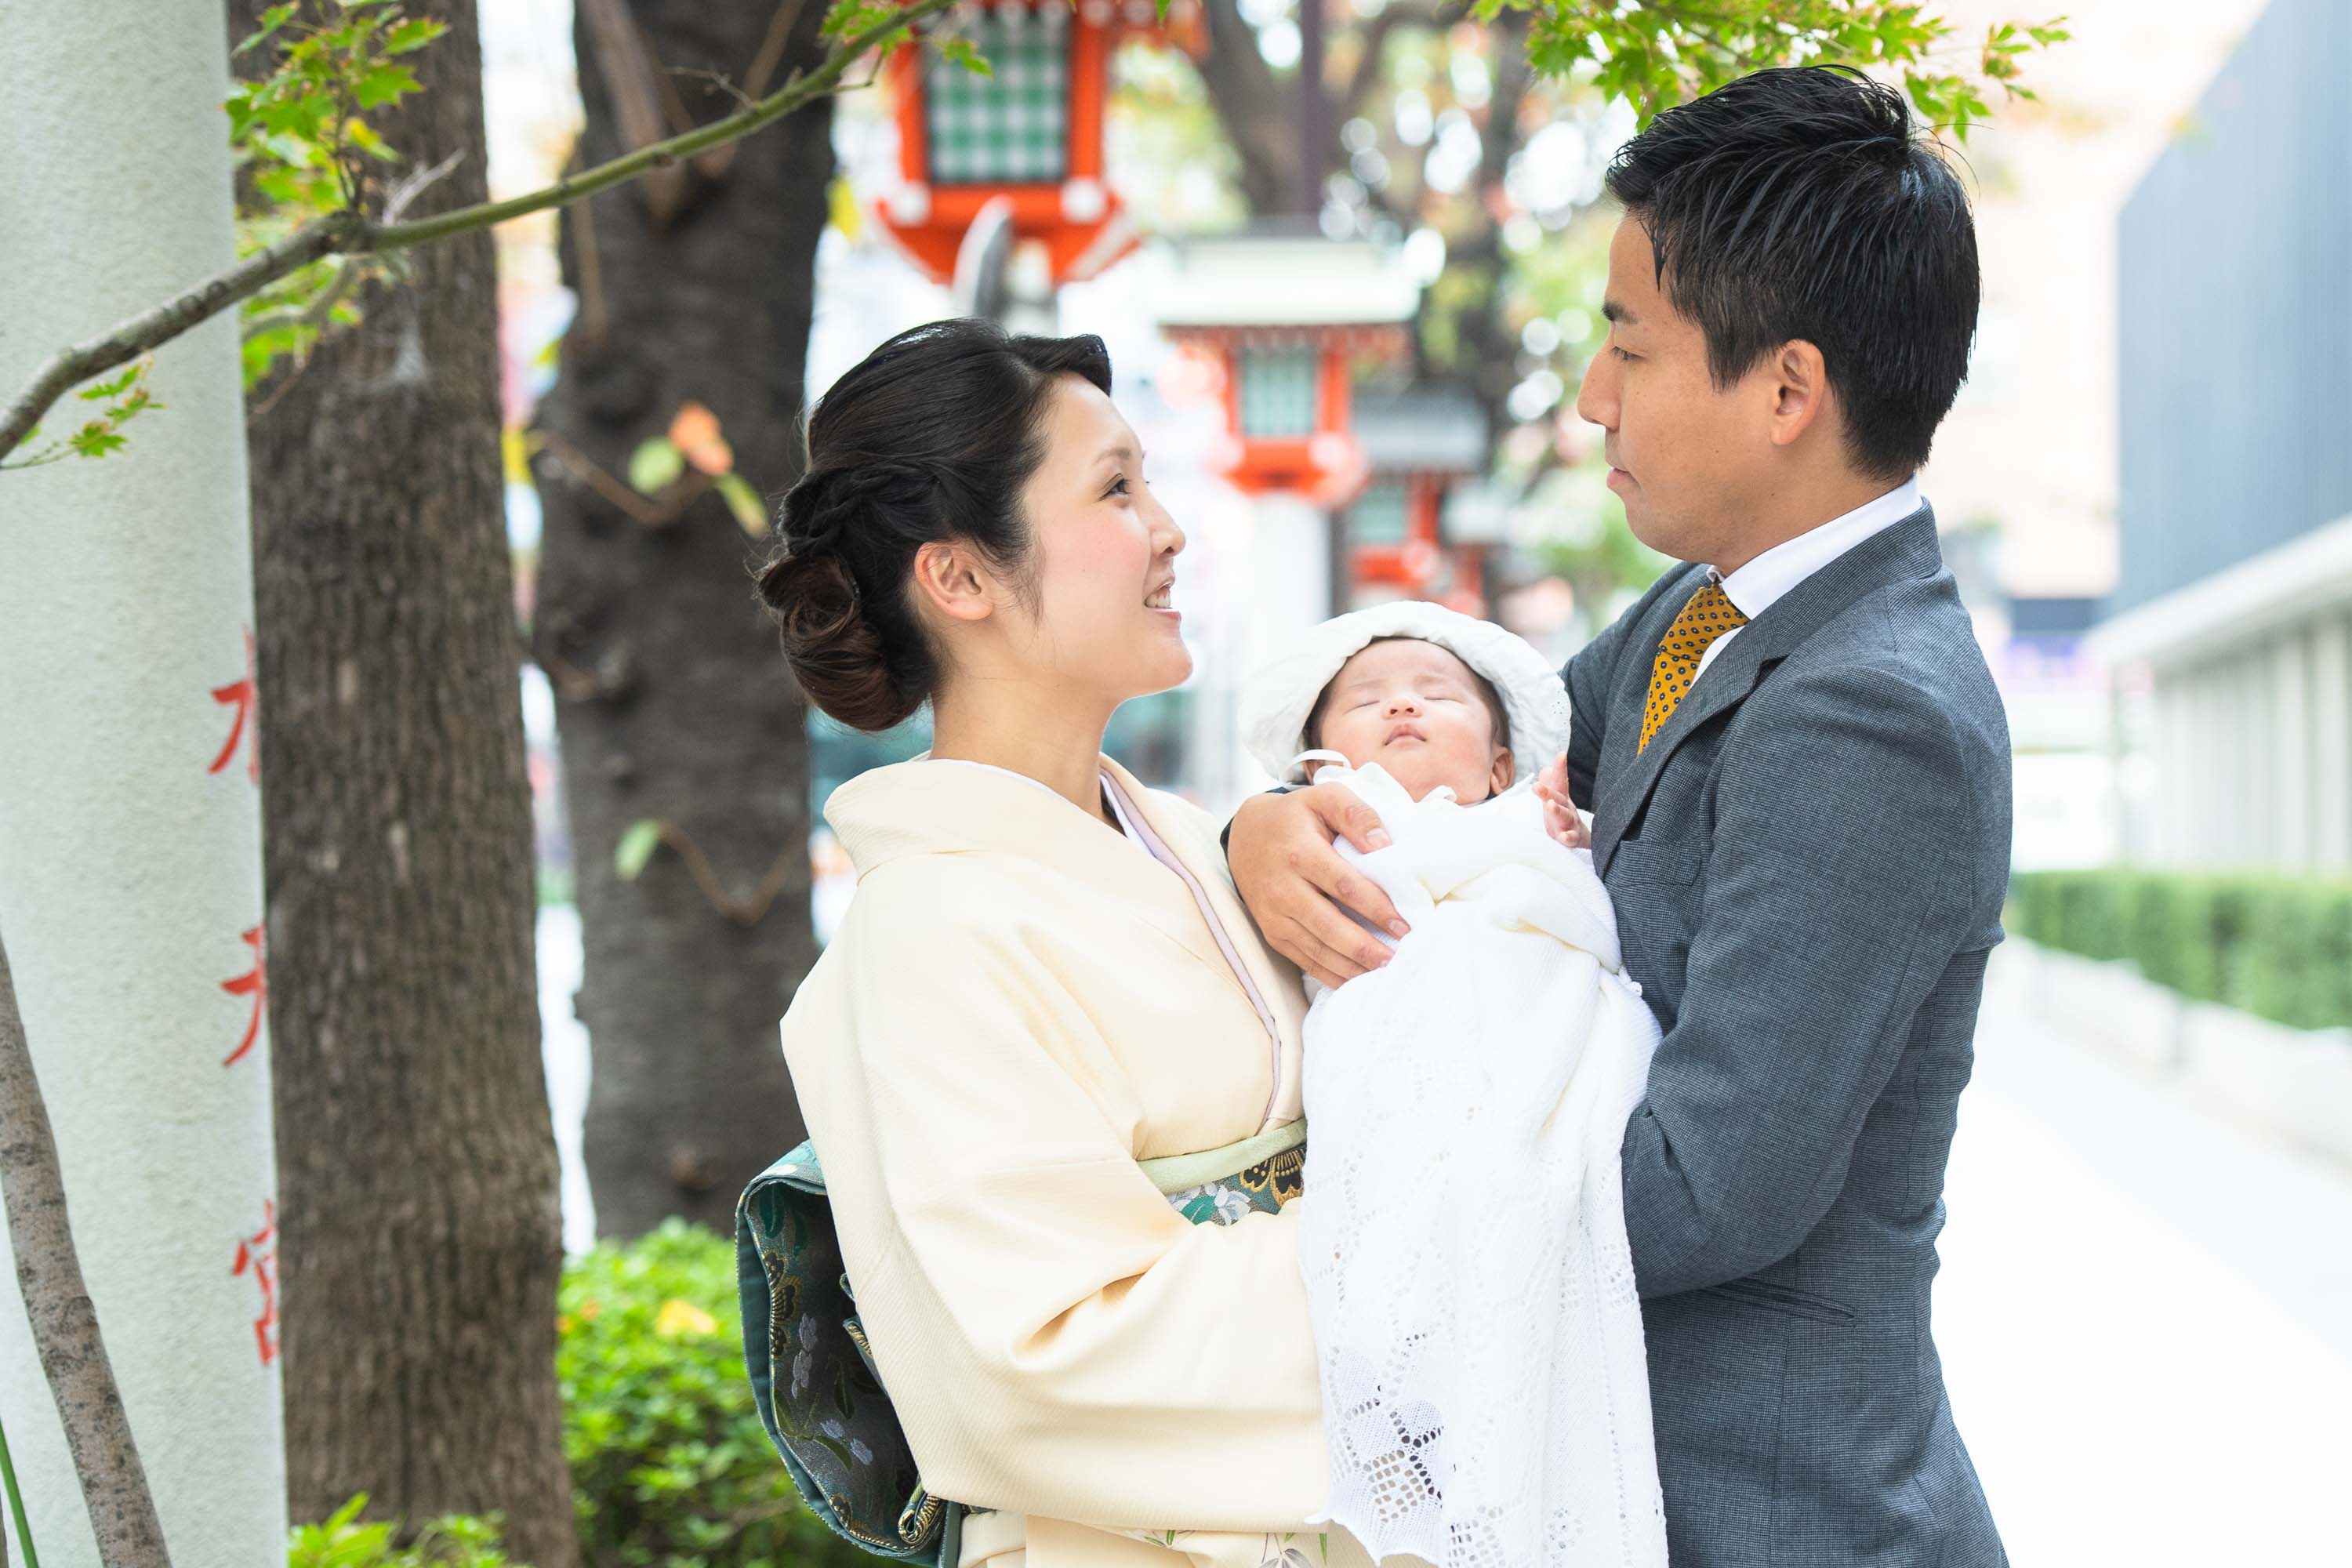 掛着を着た和装の女性に抱かれる赤ちゃんと横にいるスーツ姿の男性